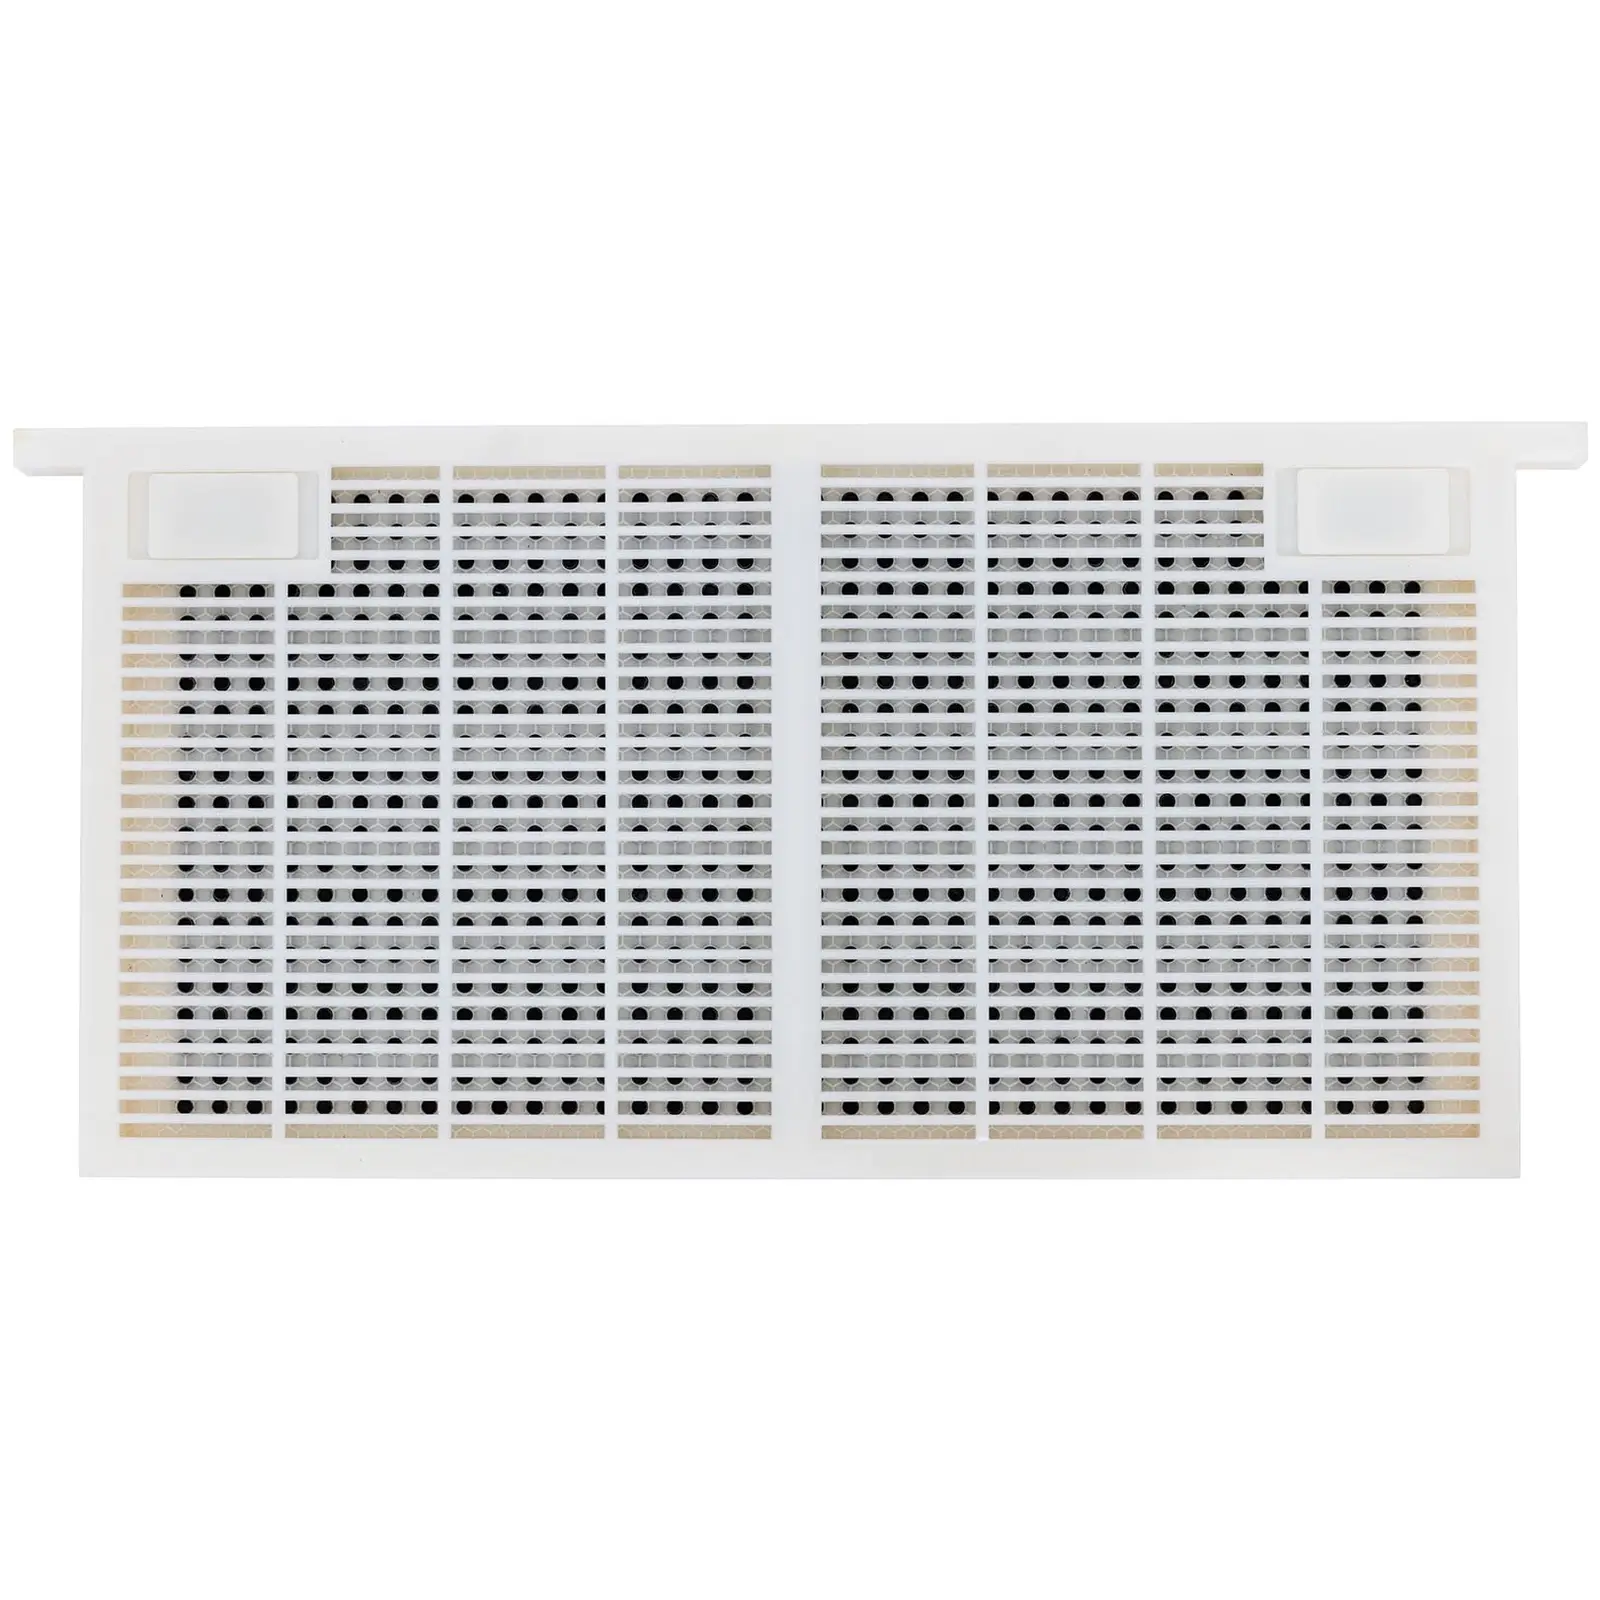 Sistema para cría de abejas reina - plástico - 483 x 232 x 42 mm